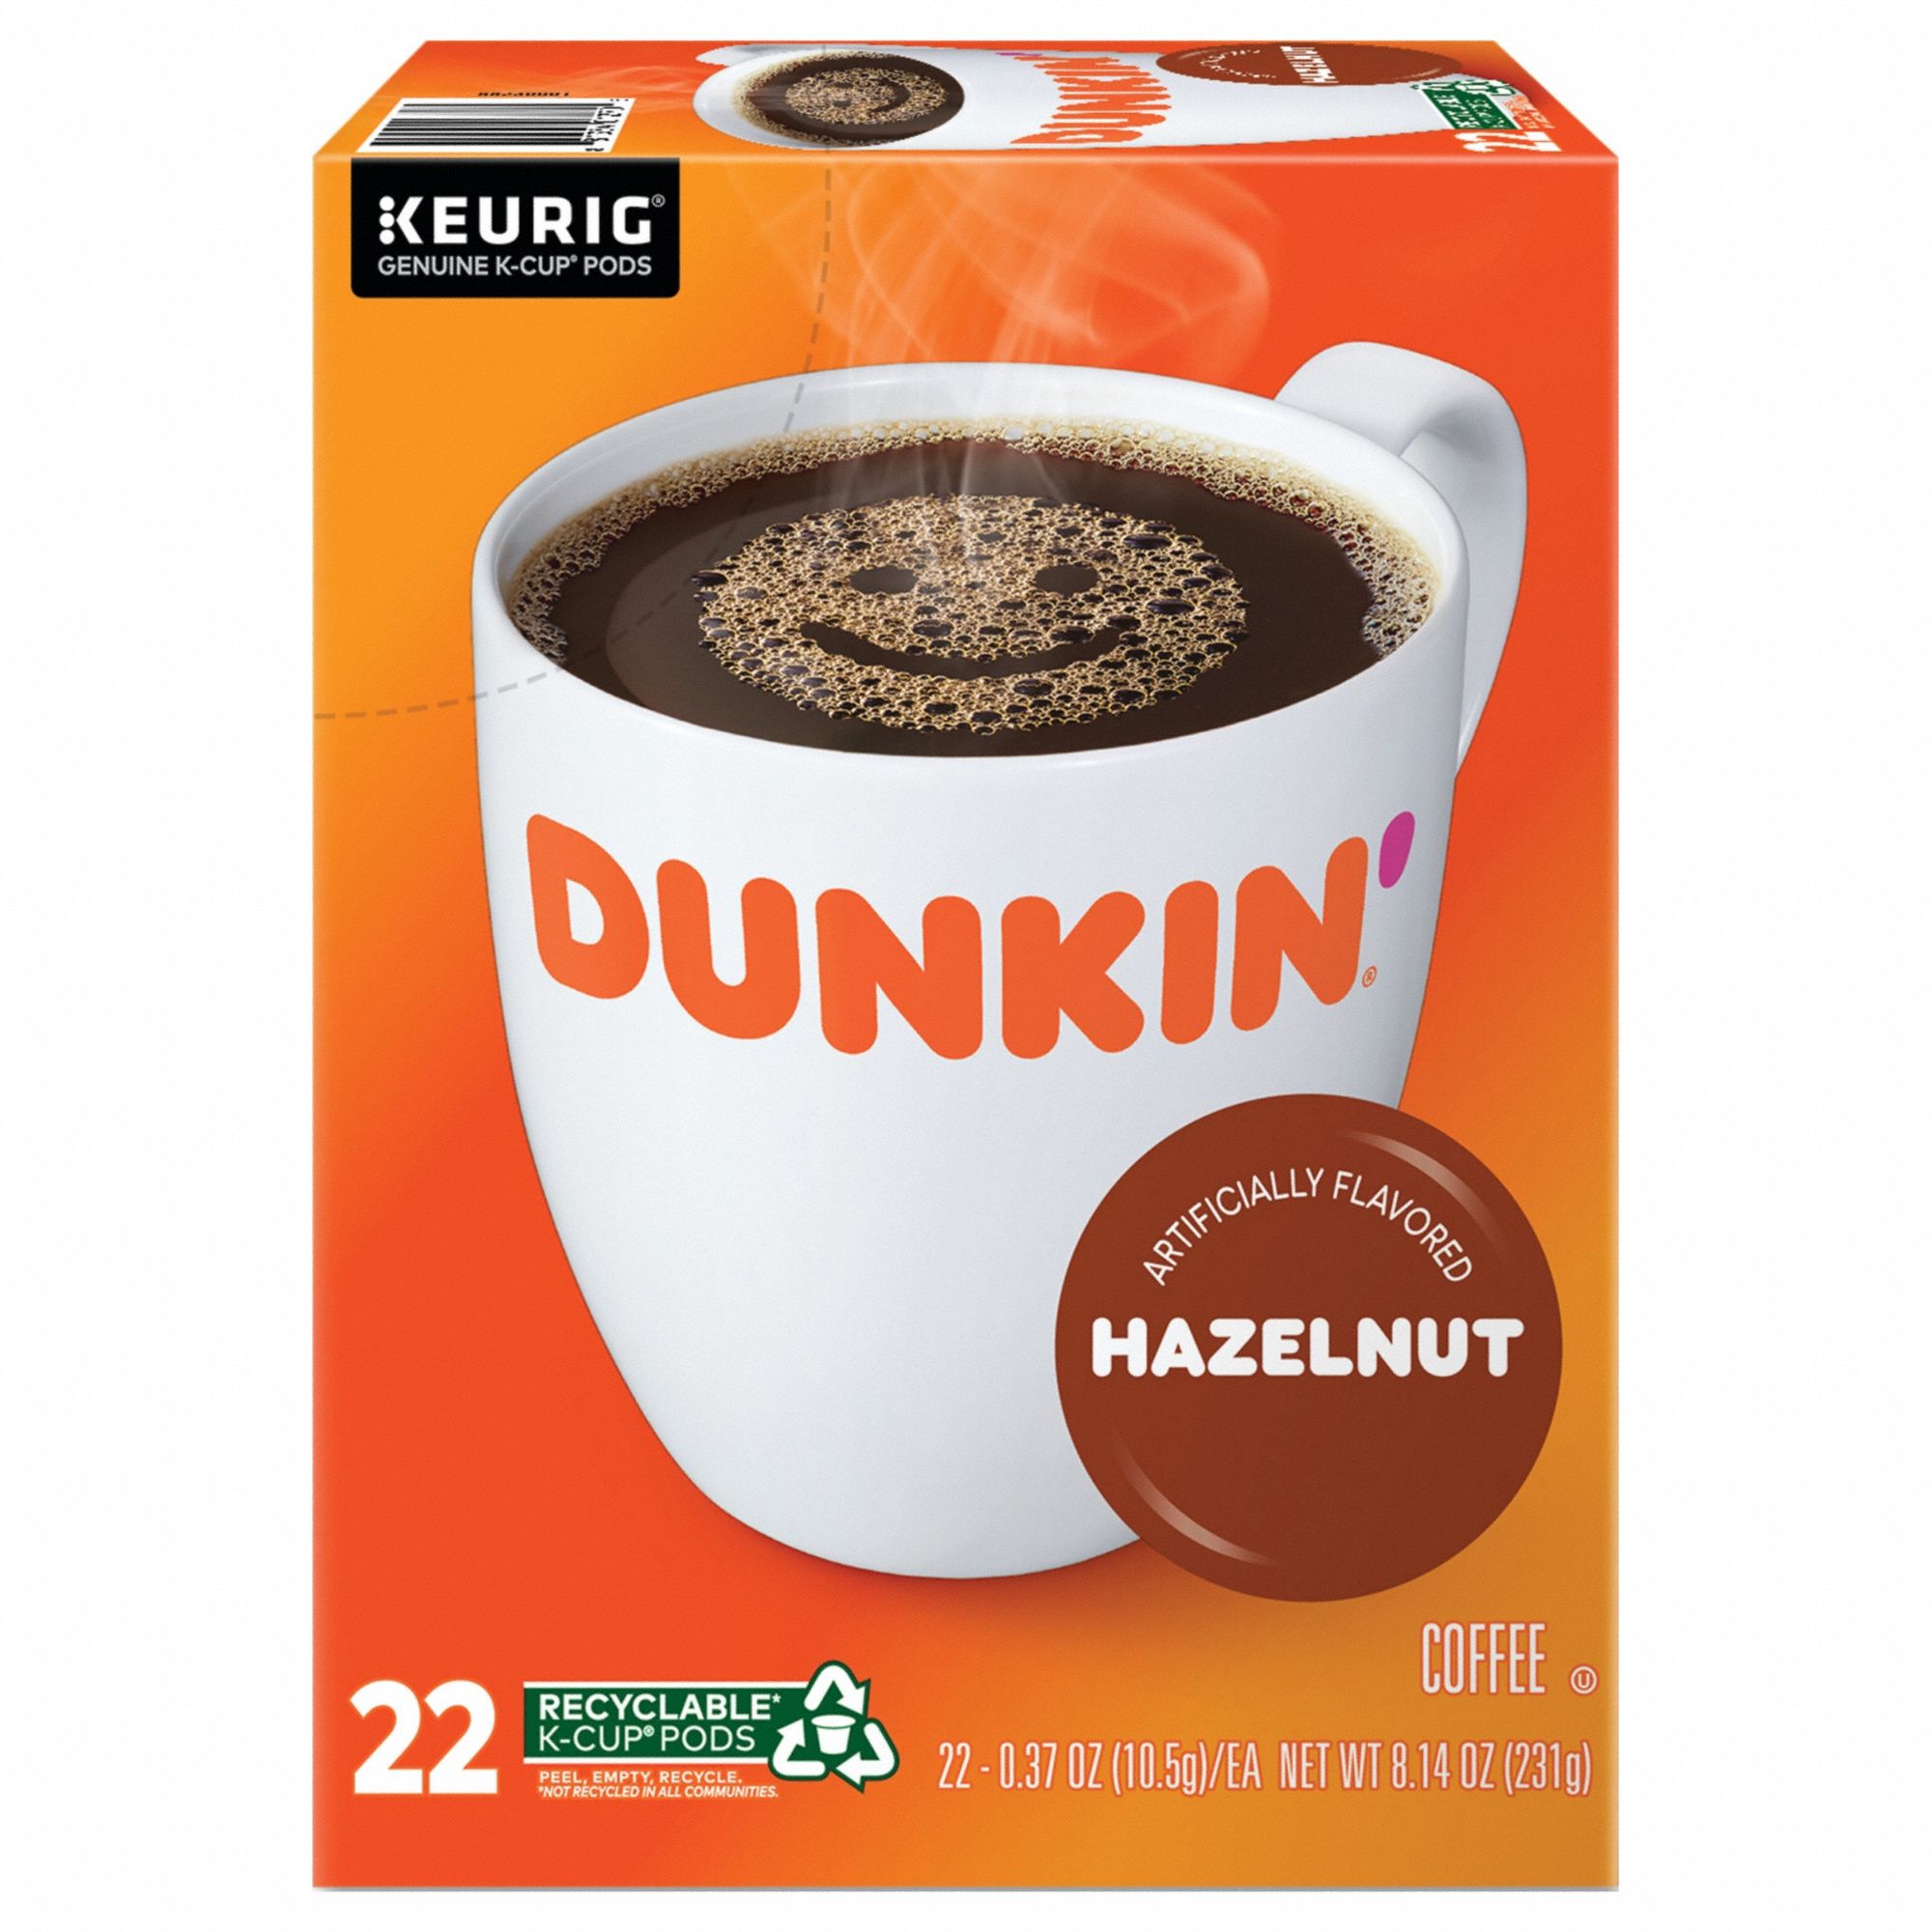 Coffee K-Cup: Caffeinated, Hazelnut, Pod, 0.37 oz Pack Wt, 8.14 oz Net Wt, 22 PK